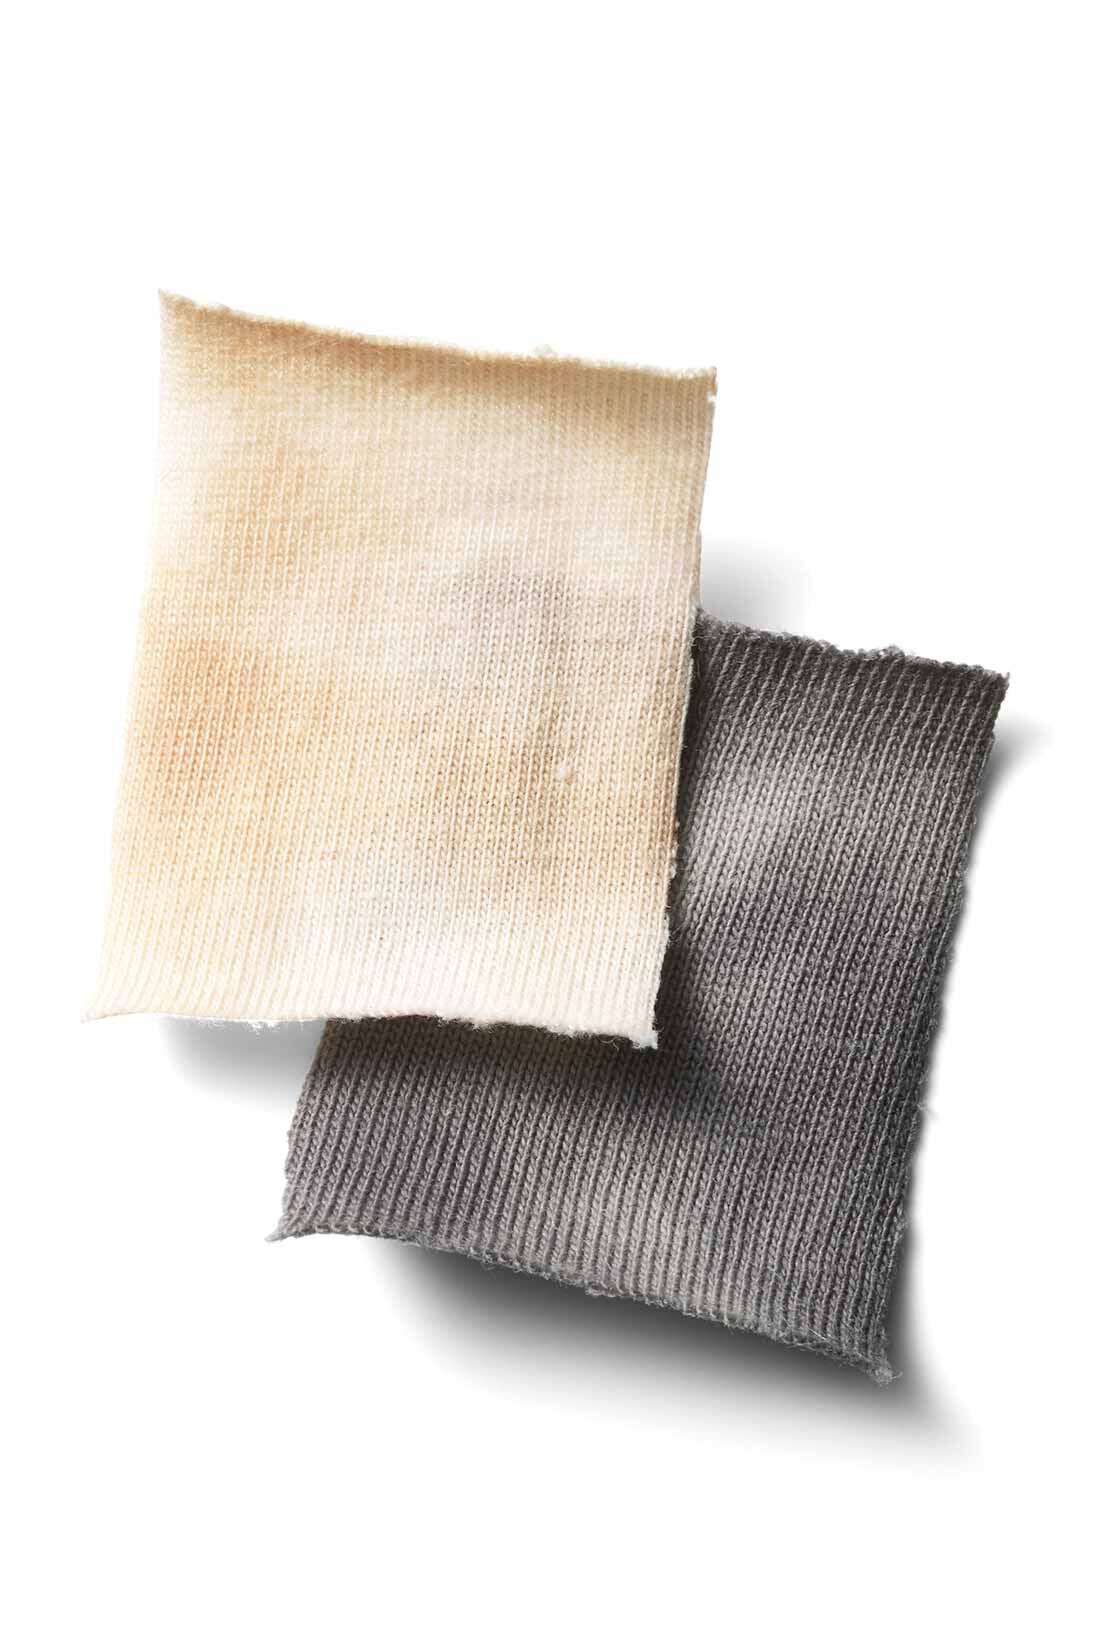 Real Stock|MEDE19F　タイダイTシャツ〈ベージュ〉|適度な厚みのある、ナチュラルな綿100％のカットソー。洗っても型くずれしにくい素材です。